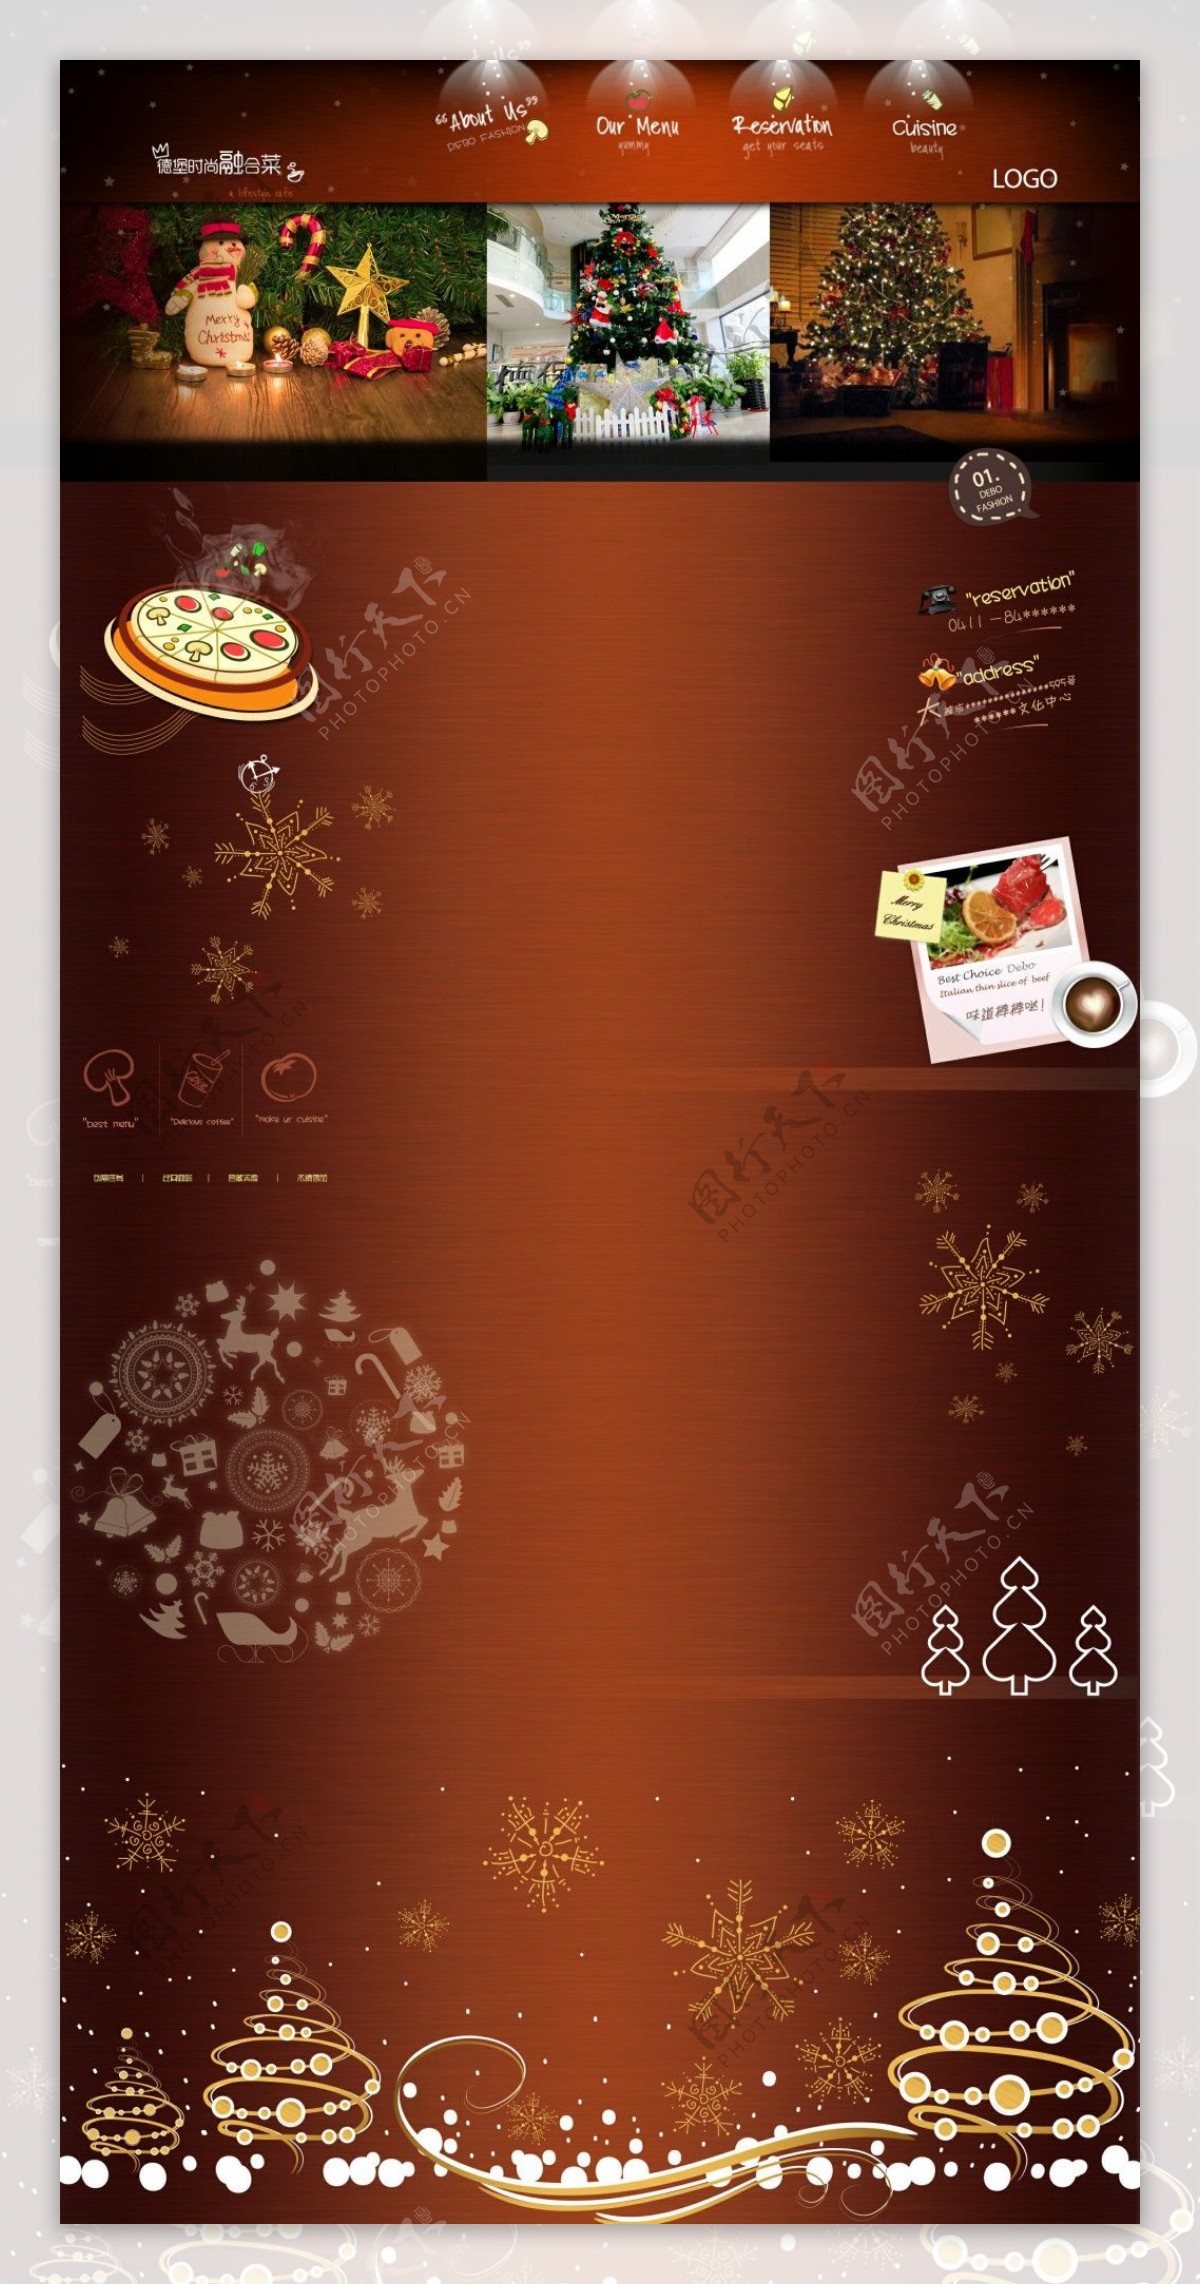 温馨的圣诞西餐微博背景图片PSD文件